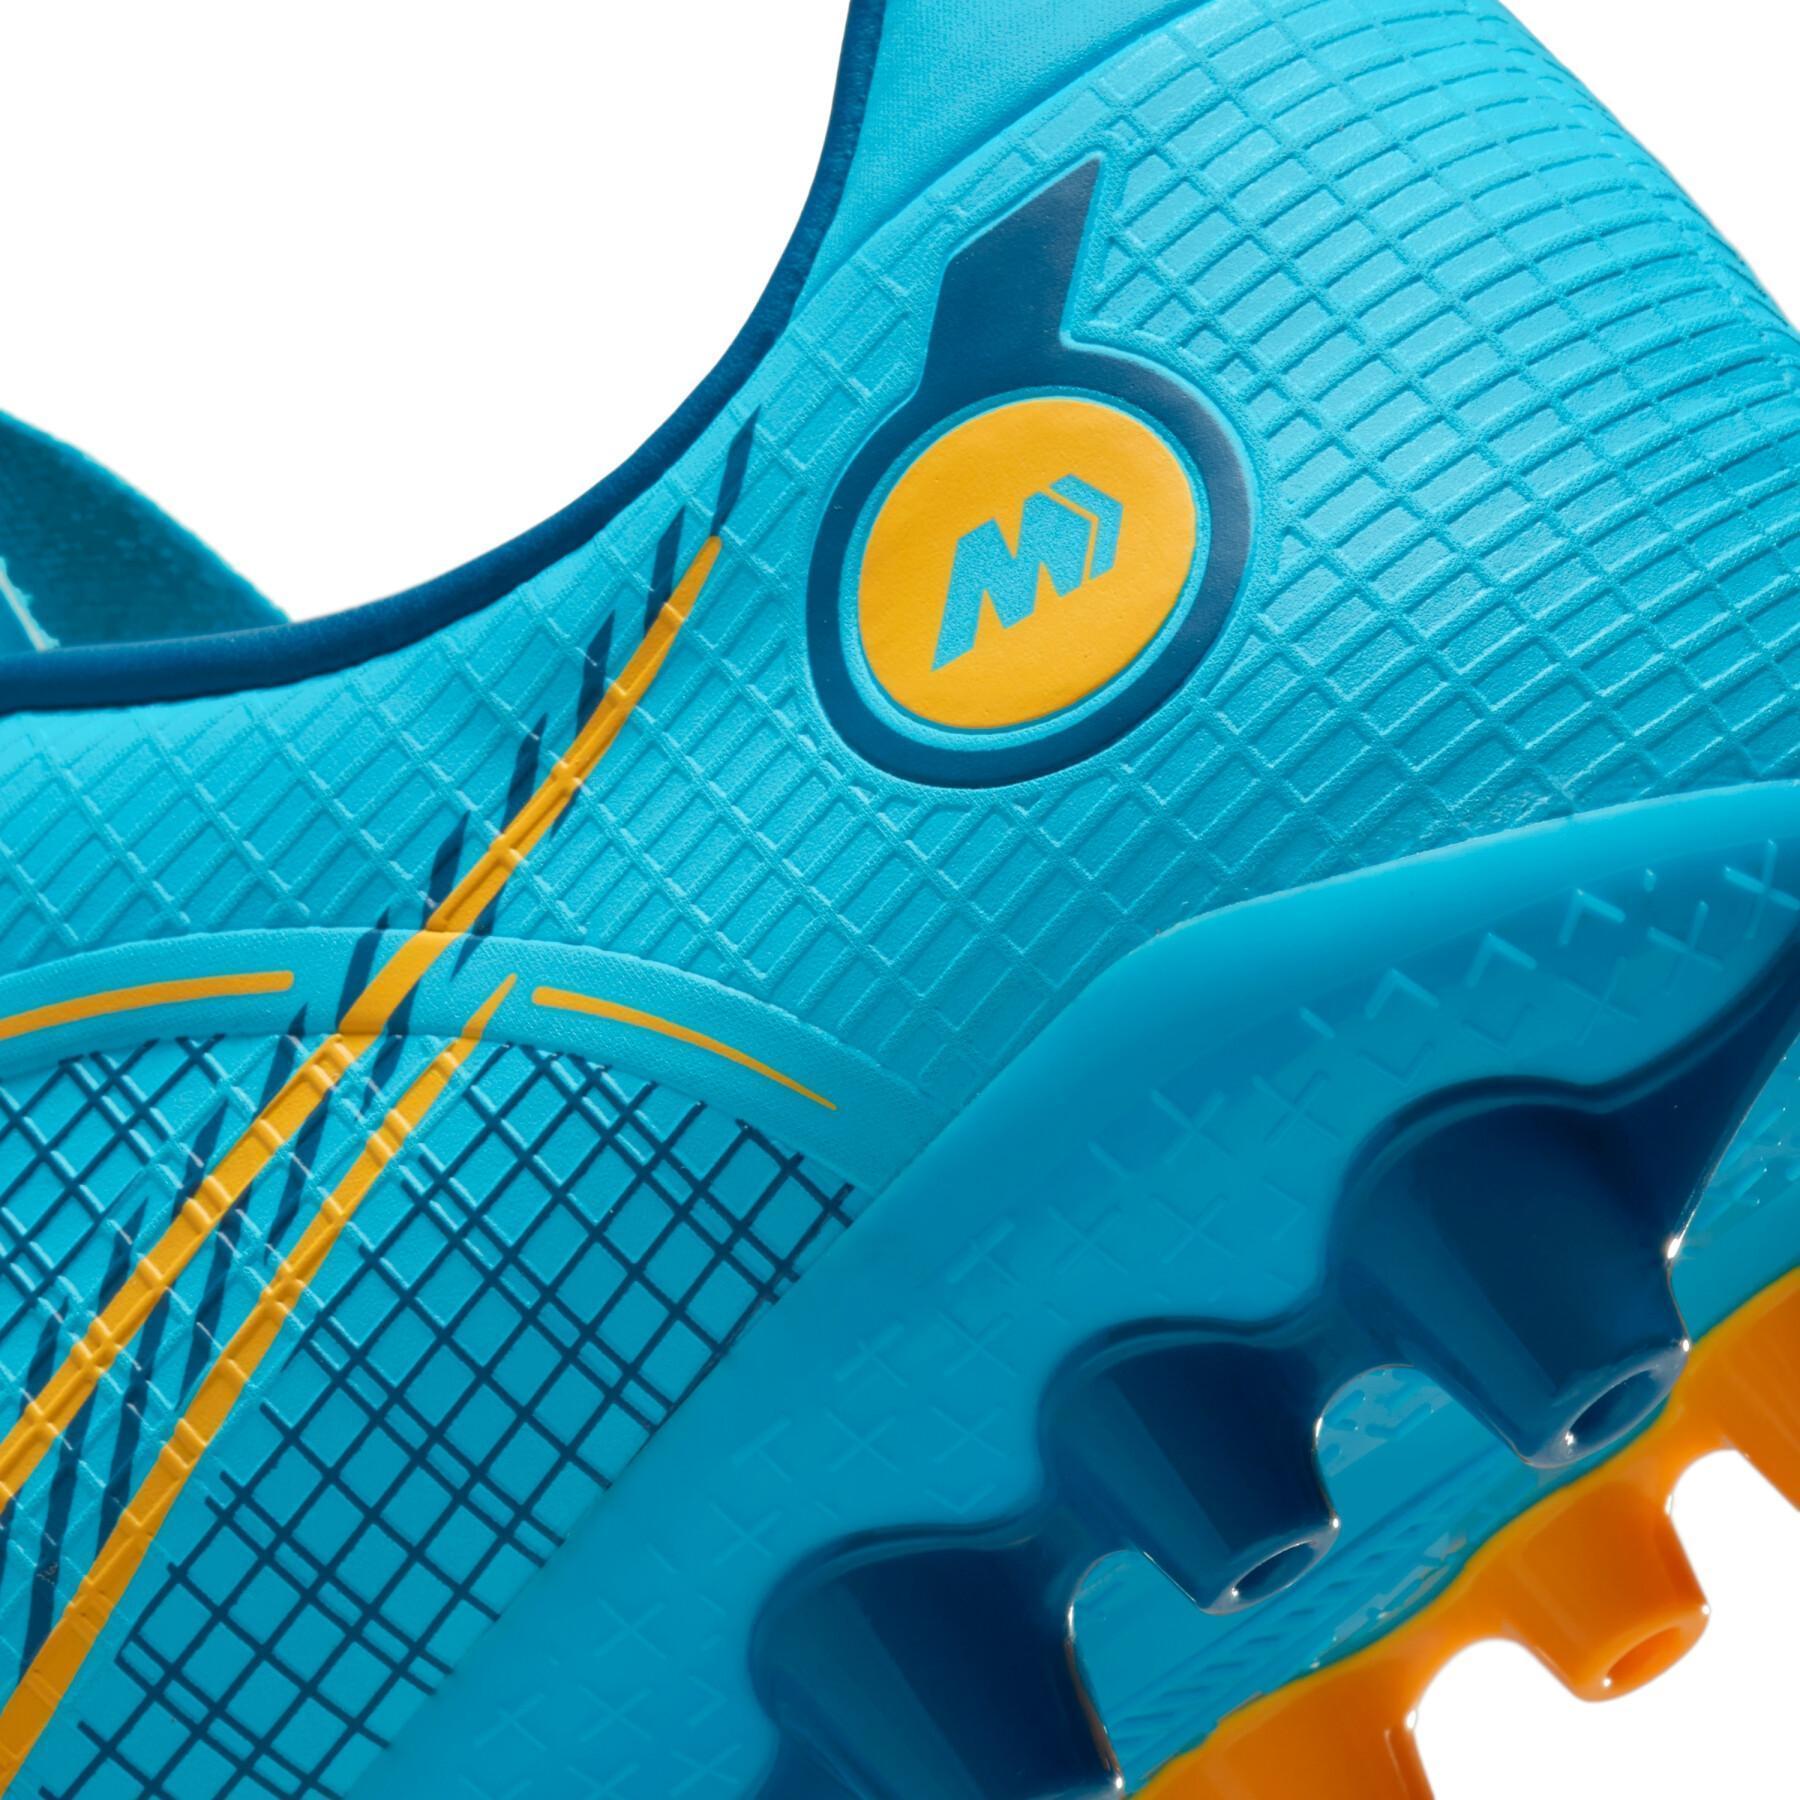 Sapatos de futebol Nike Vapor 14 Academy AG -Blueprint Pack